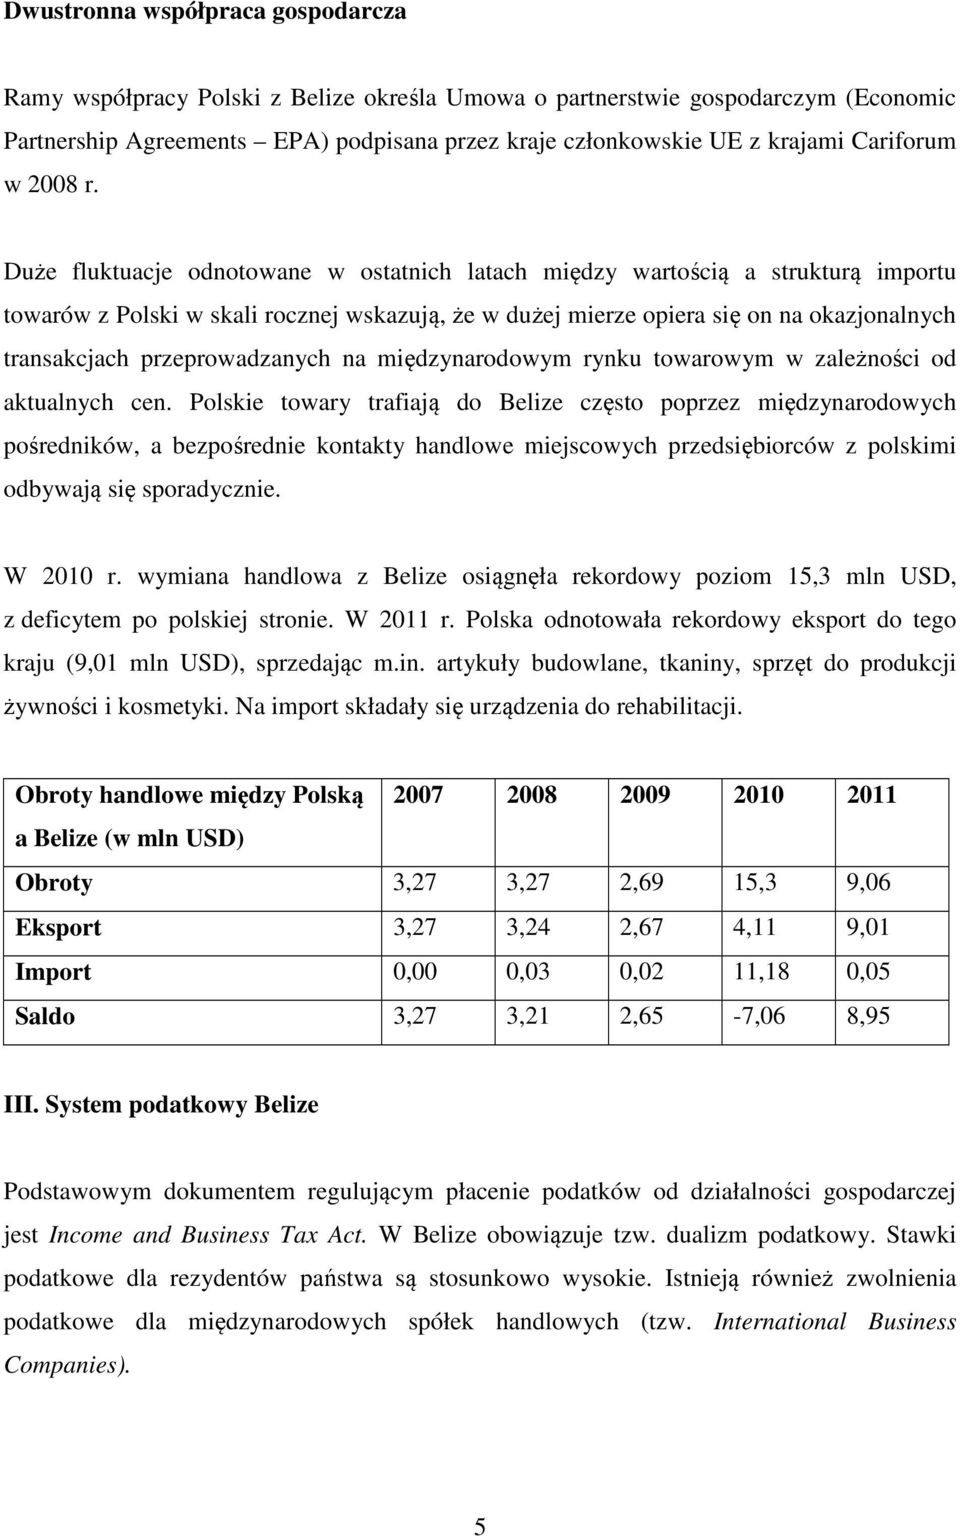 Duże fluktuacje odnotowane w ostatnich latach między wartością a strukturą importu towarów z Polski w skali rocznej wskazują, że w dużej mierze opiera się on na okazjonalnych transakcjach